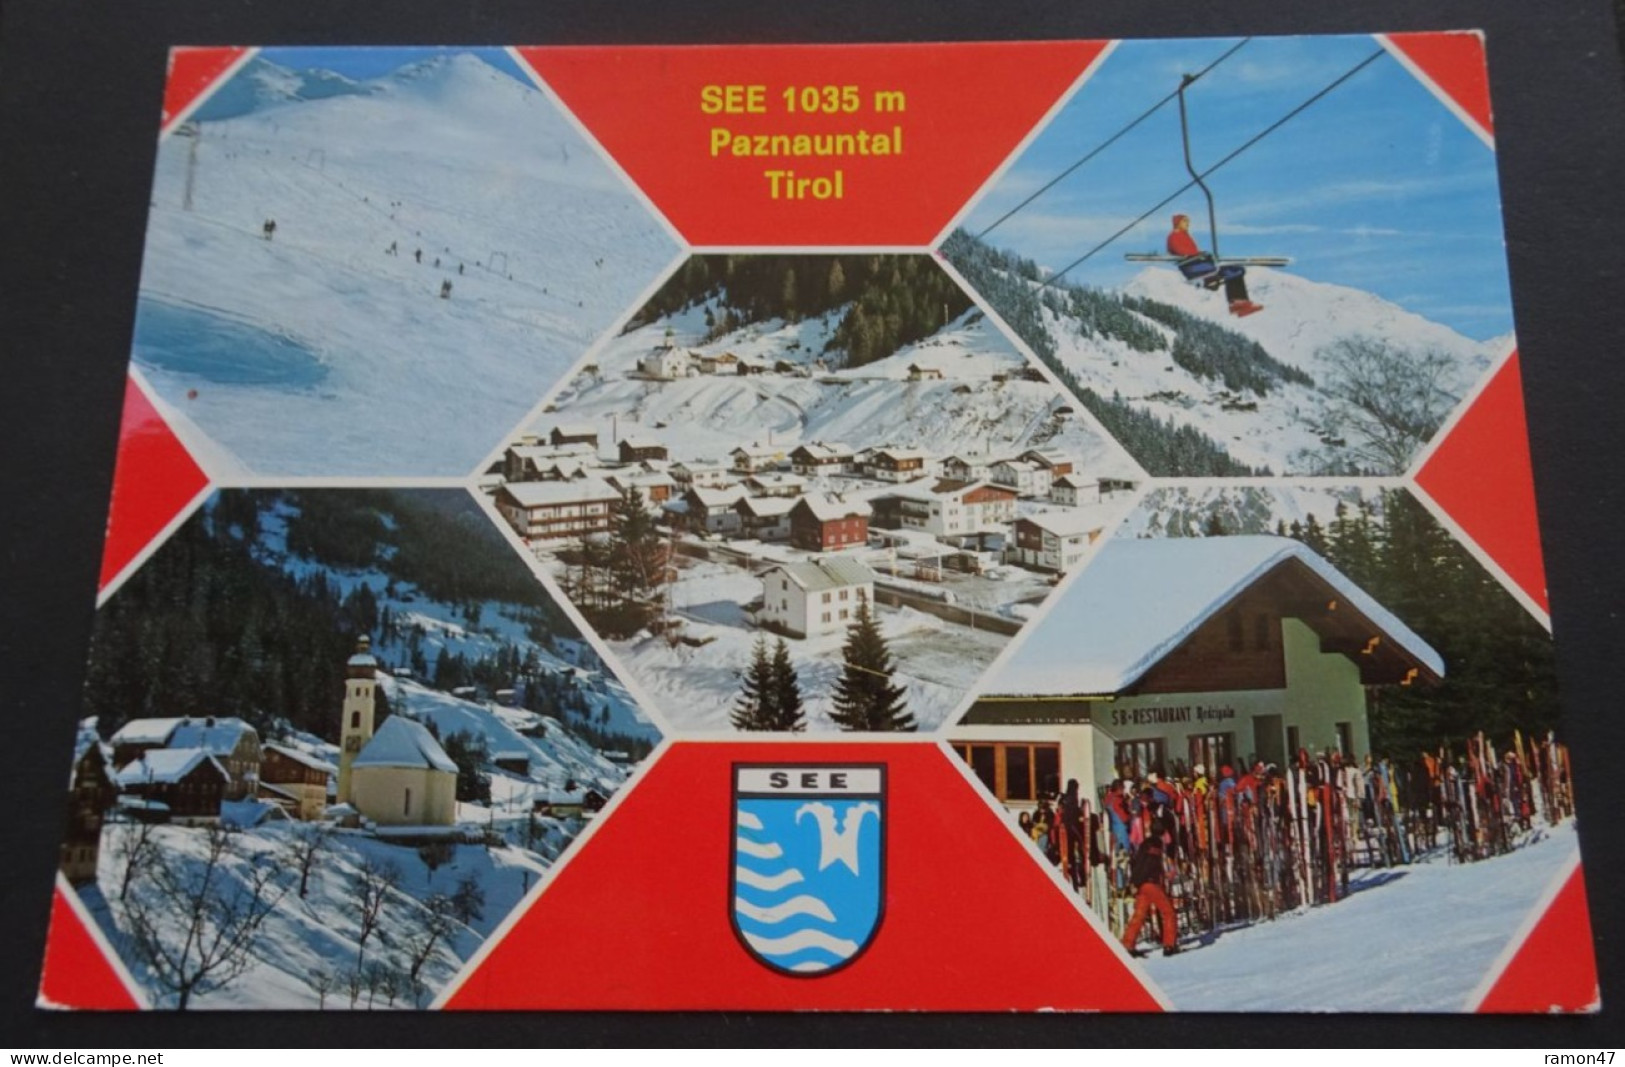 See 1035 M - Paznauntal, Tirol - Rudolf Mathis, Silvrettaverlag, Landeck, Tirol - # 3613 - Landeck